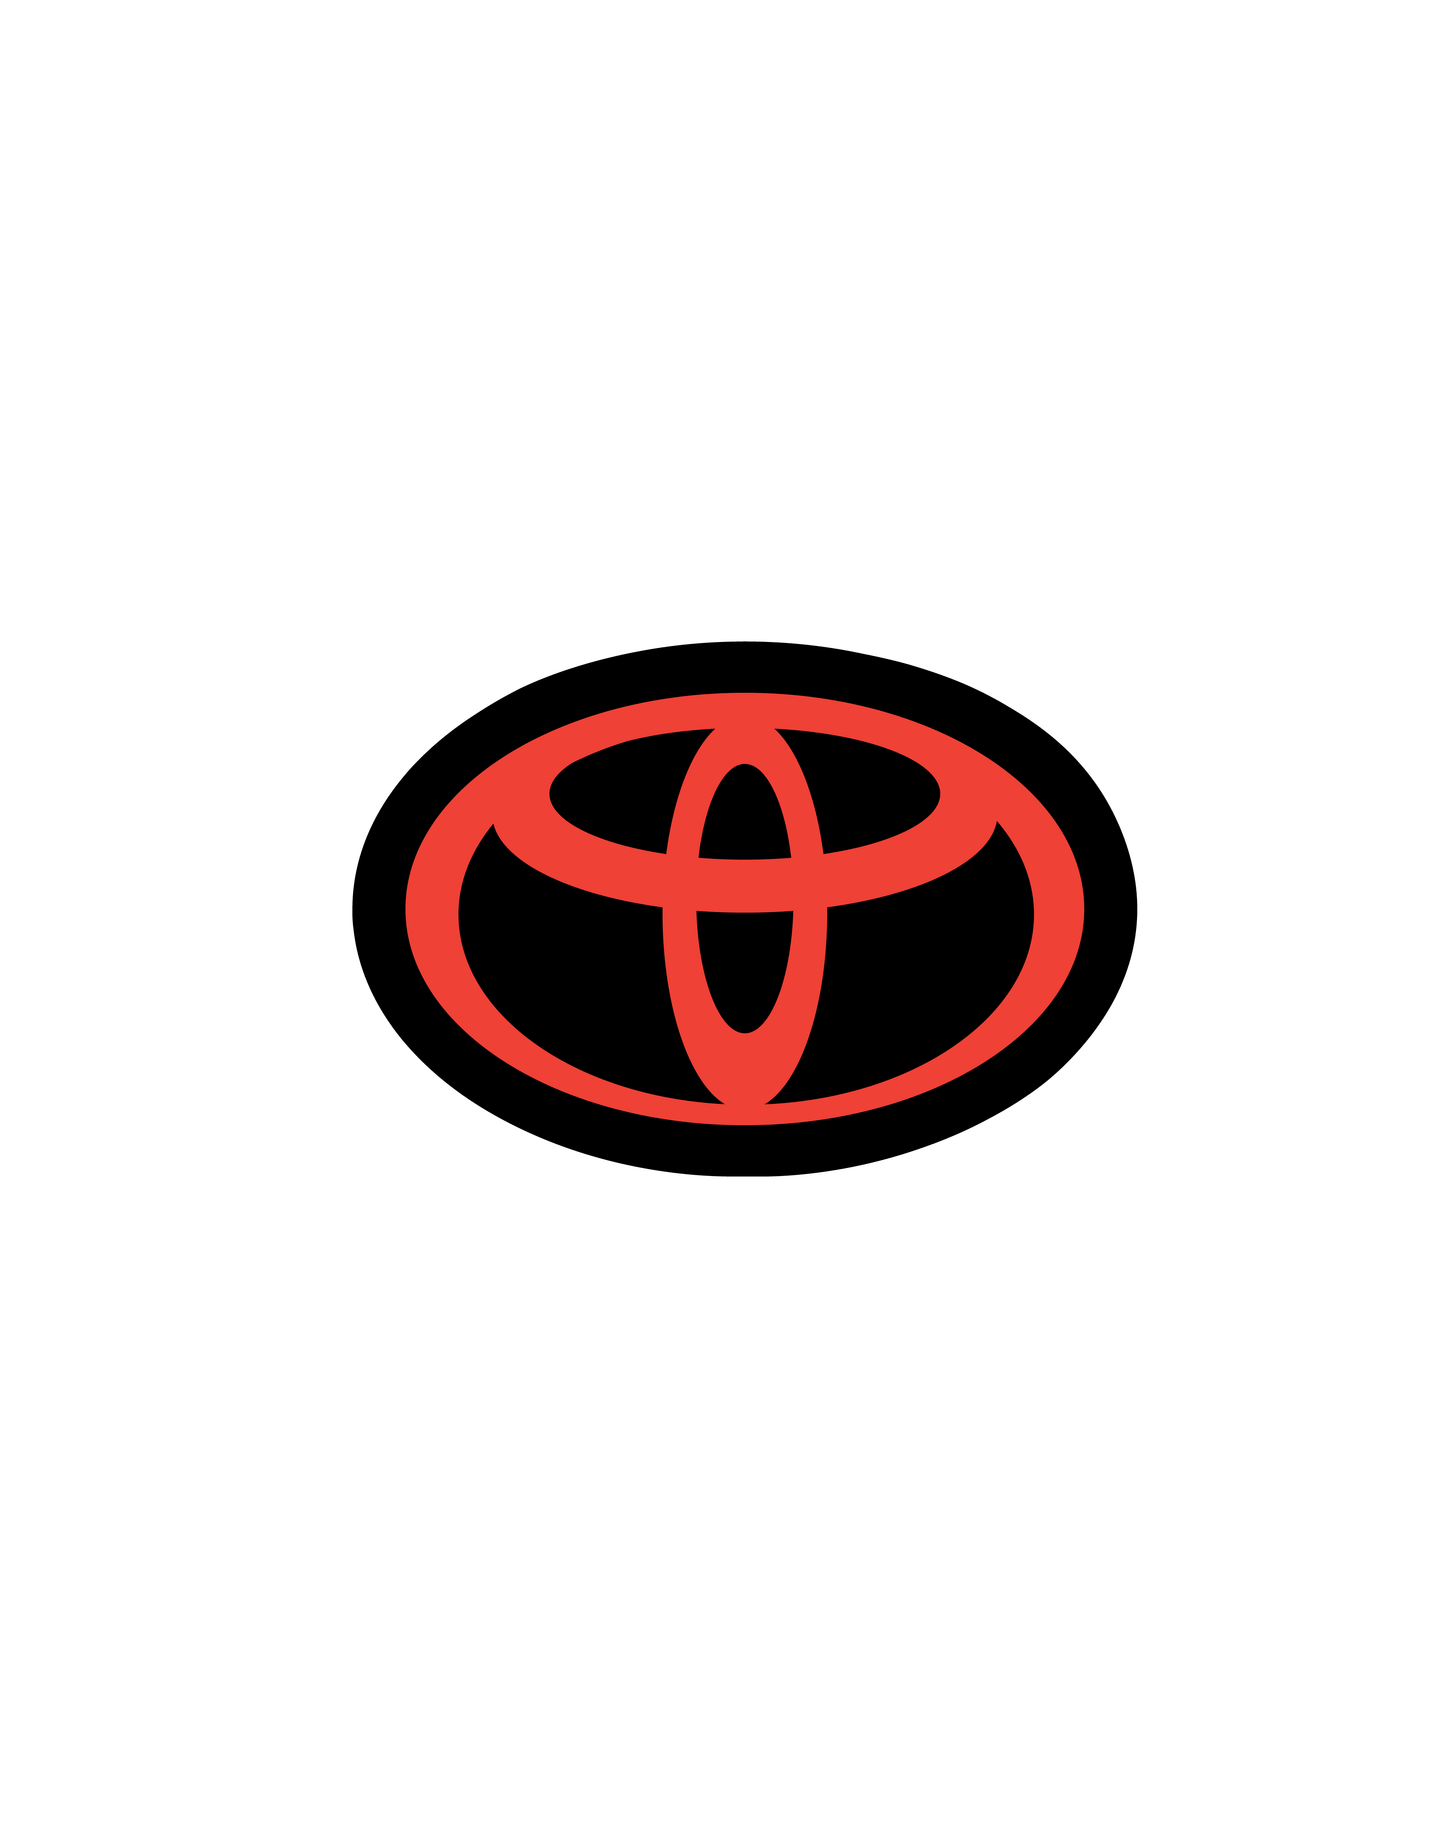 2018-2024 Toyota Camry Front Emblem Vinyl Overlay